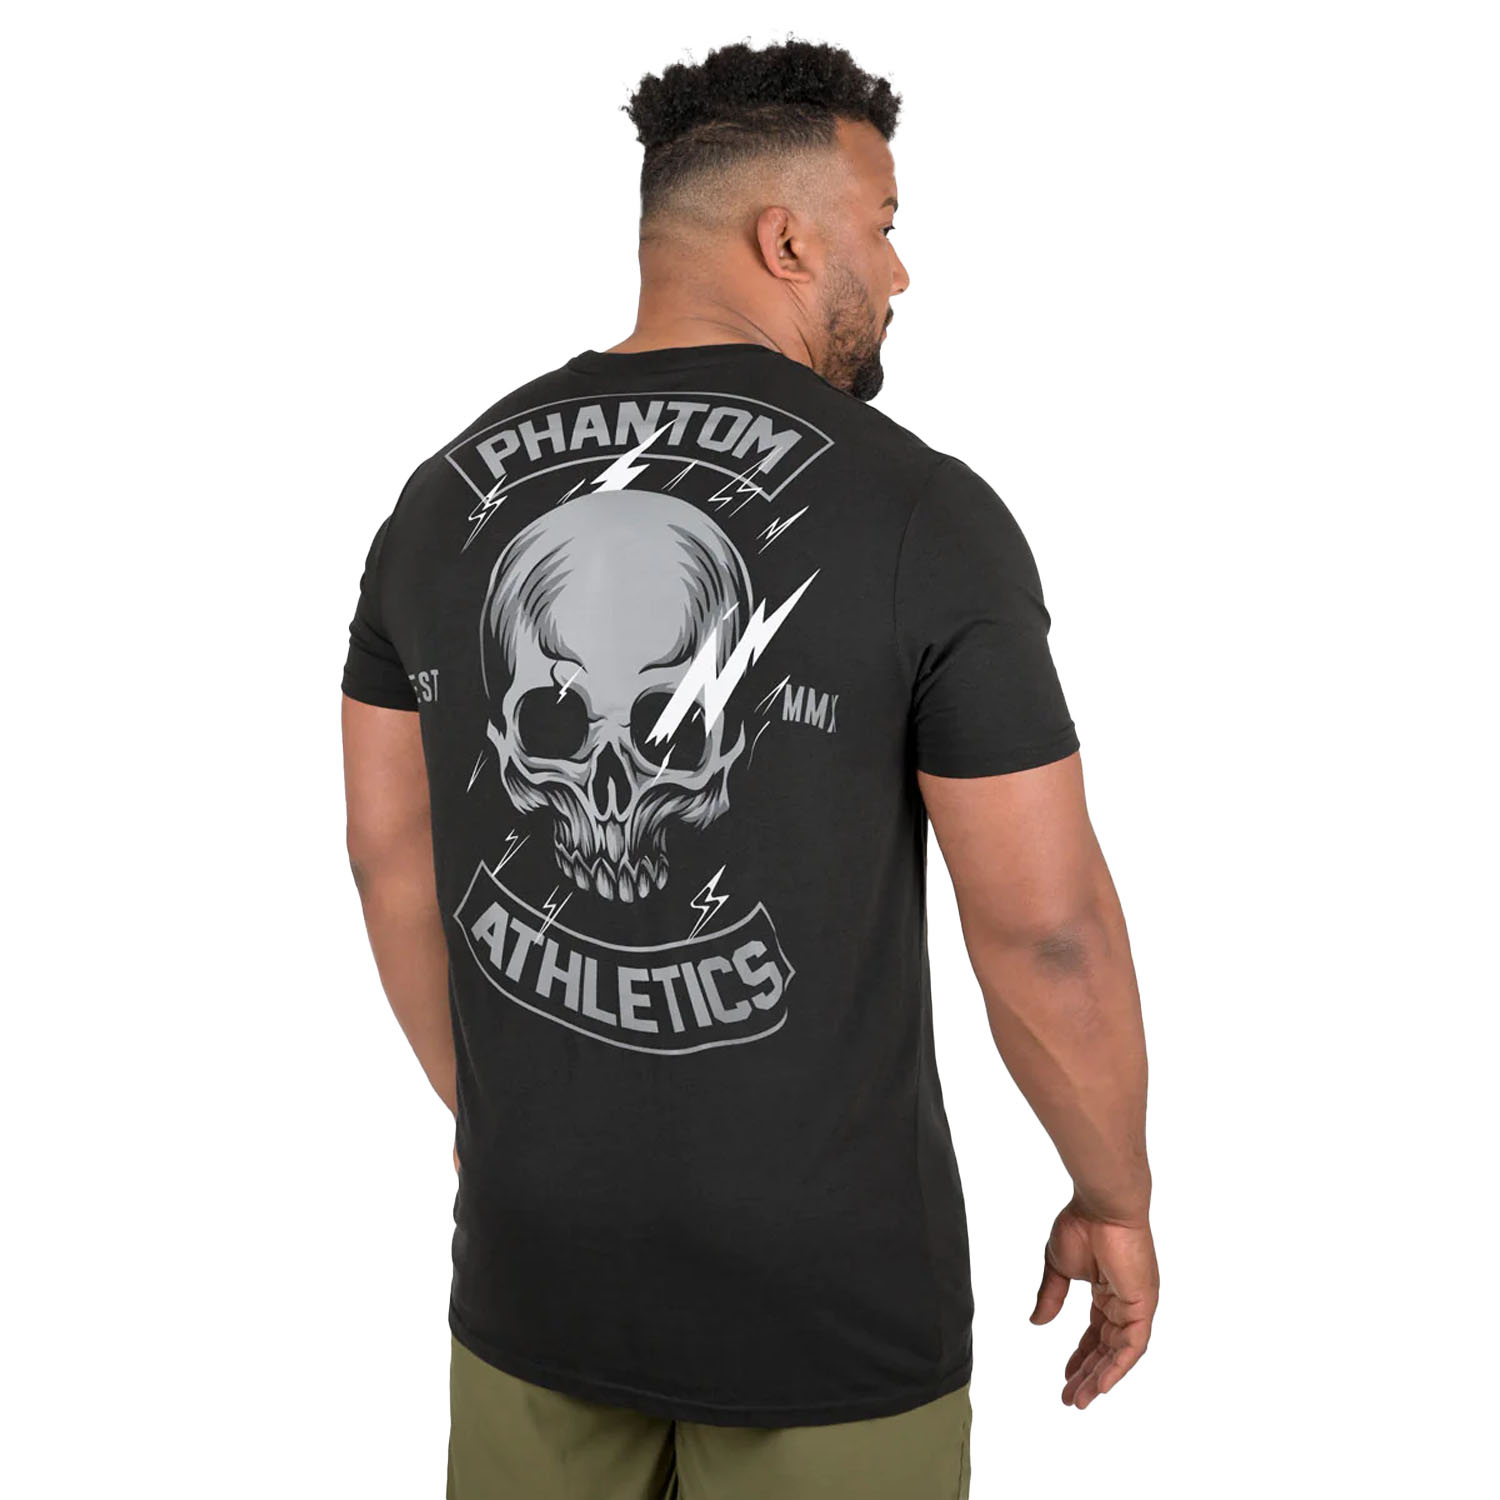 Phantom Athletics T-Shirt, Lightning Skull, black